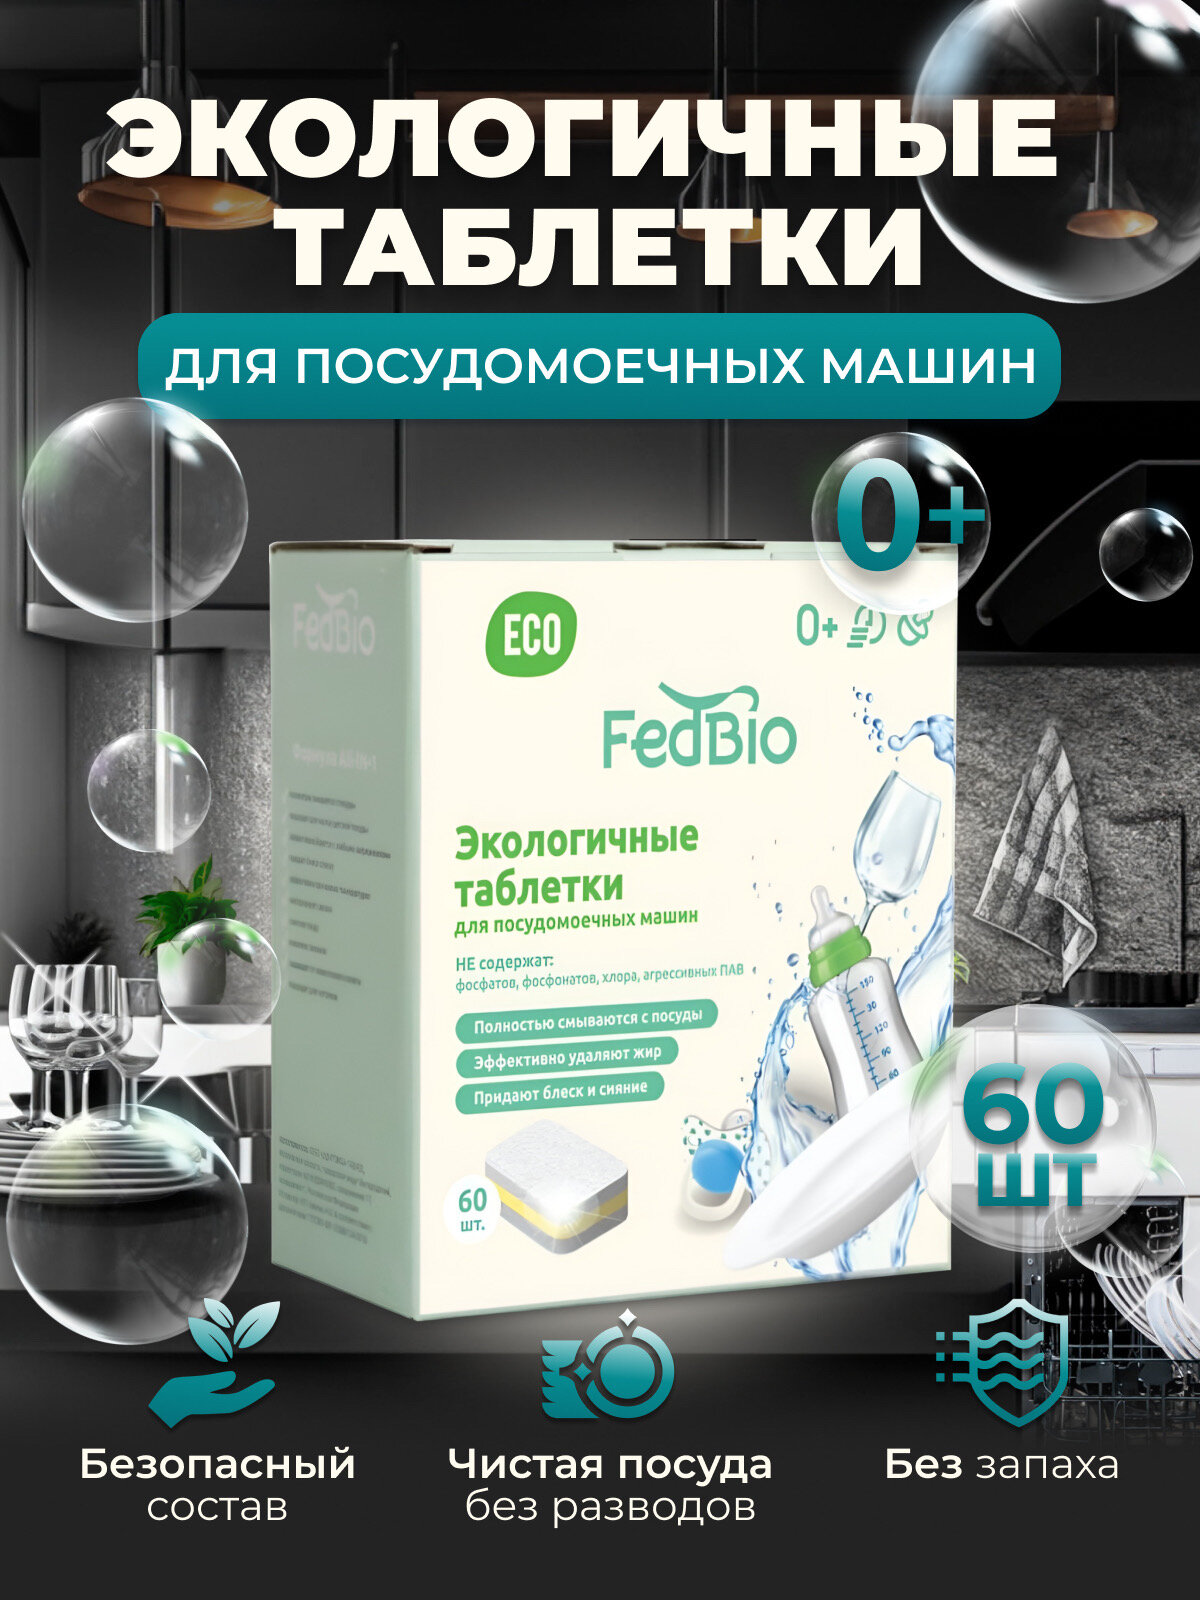 Экологичные таблетки для посудомоечной машины FedBio 60 шт